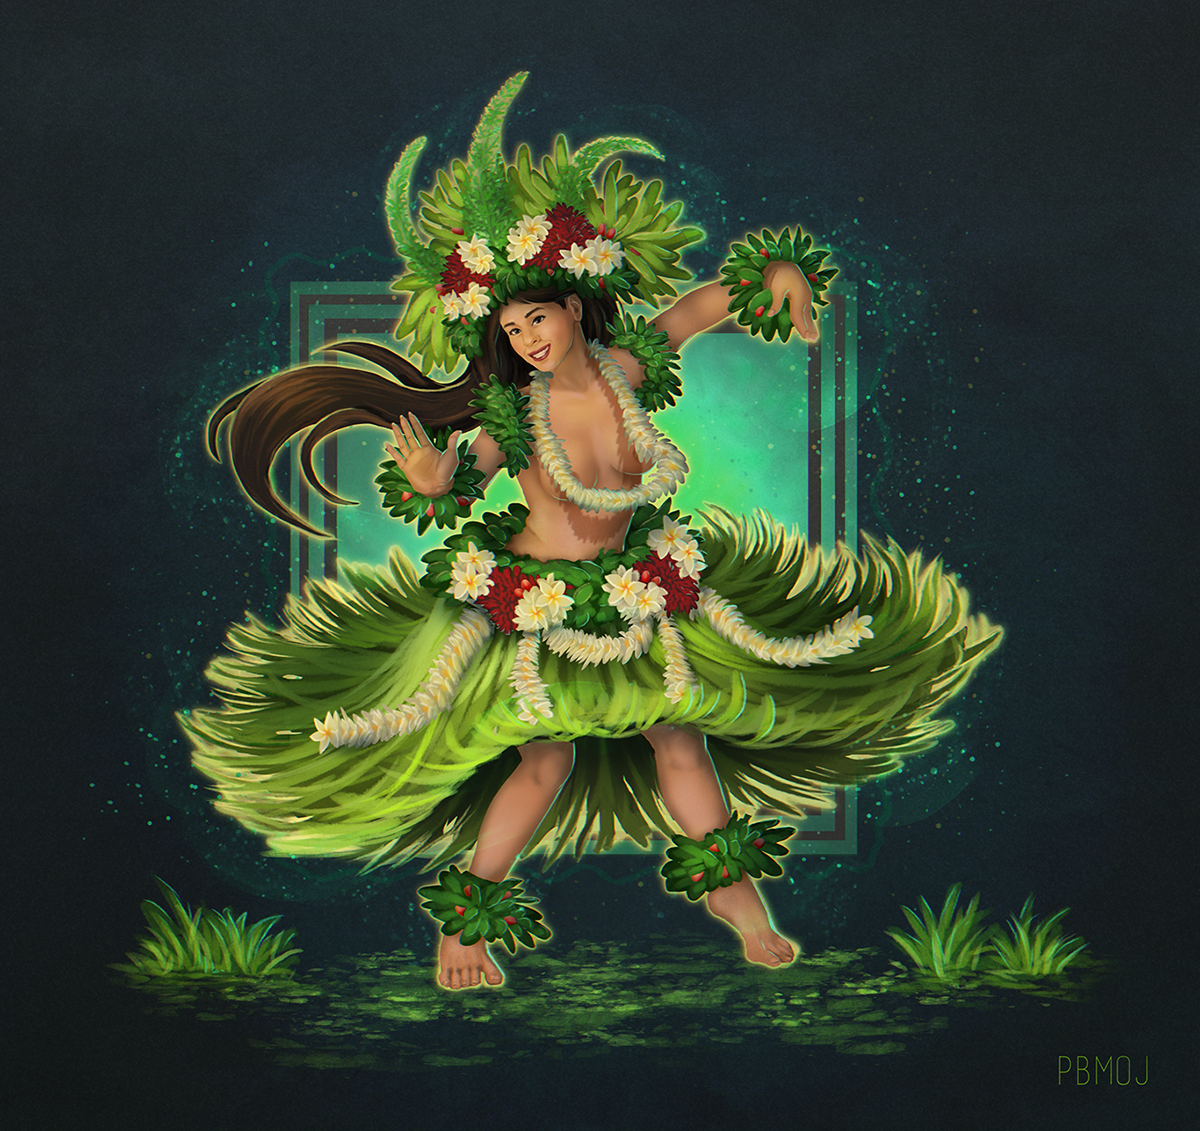 HAWAII Hula goddess laka mythology characterdesignchallenge dancer Nature forest